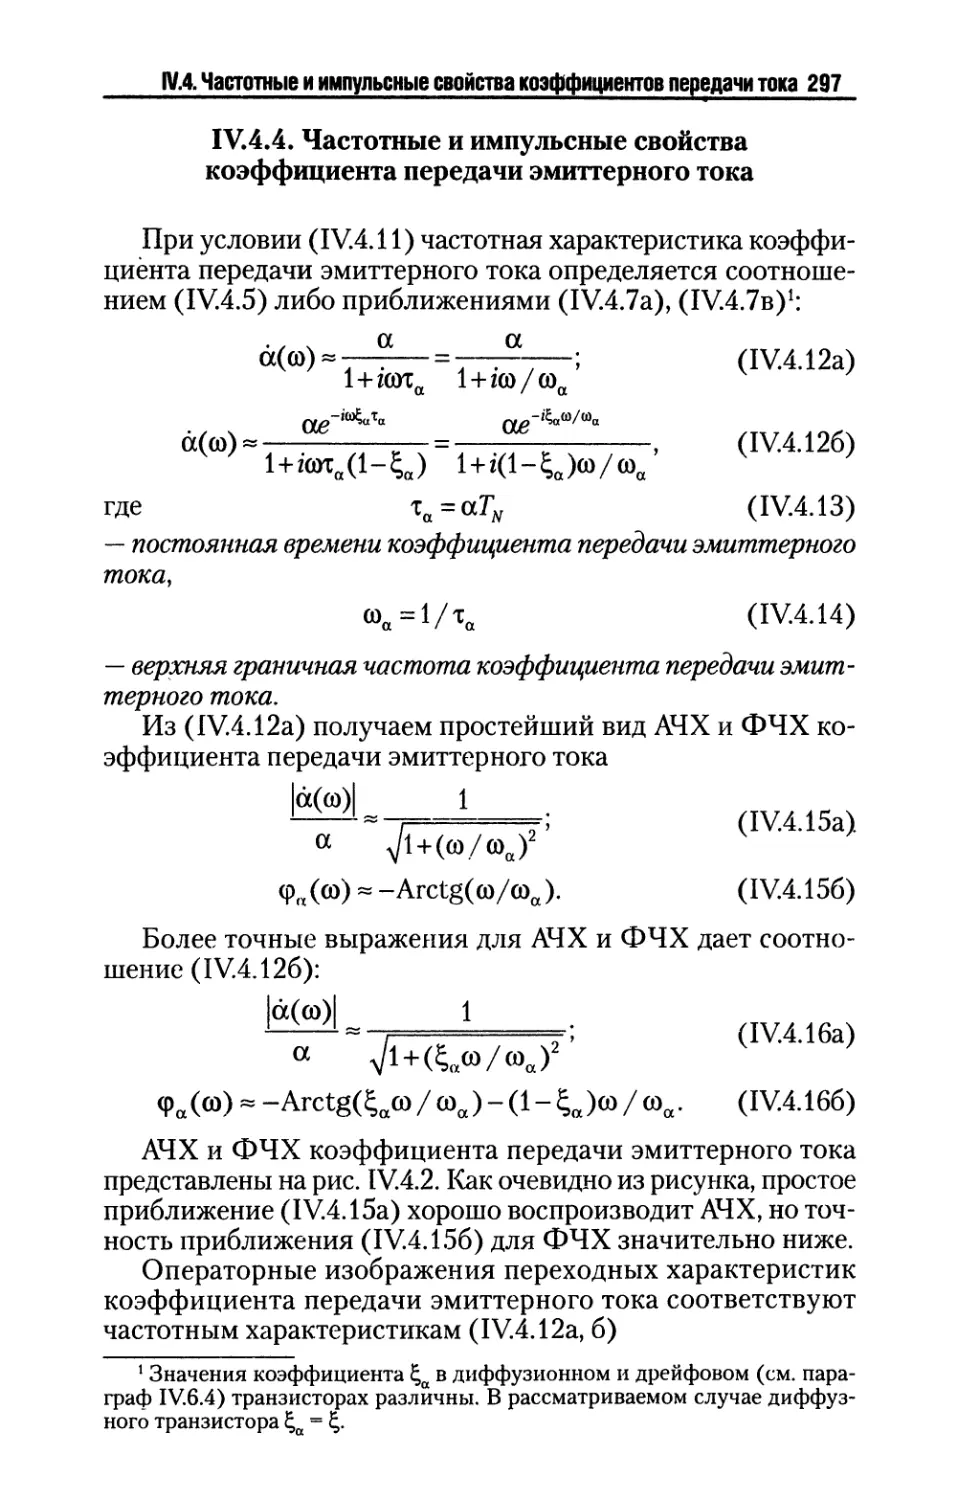 IV.4.4. Частотные и импульсные свойства коэффициента передачи эмиттерного тока